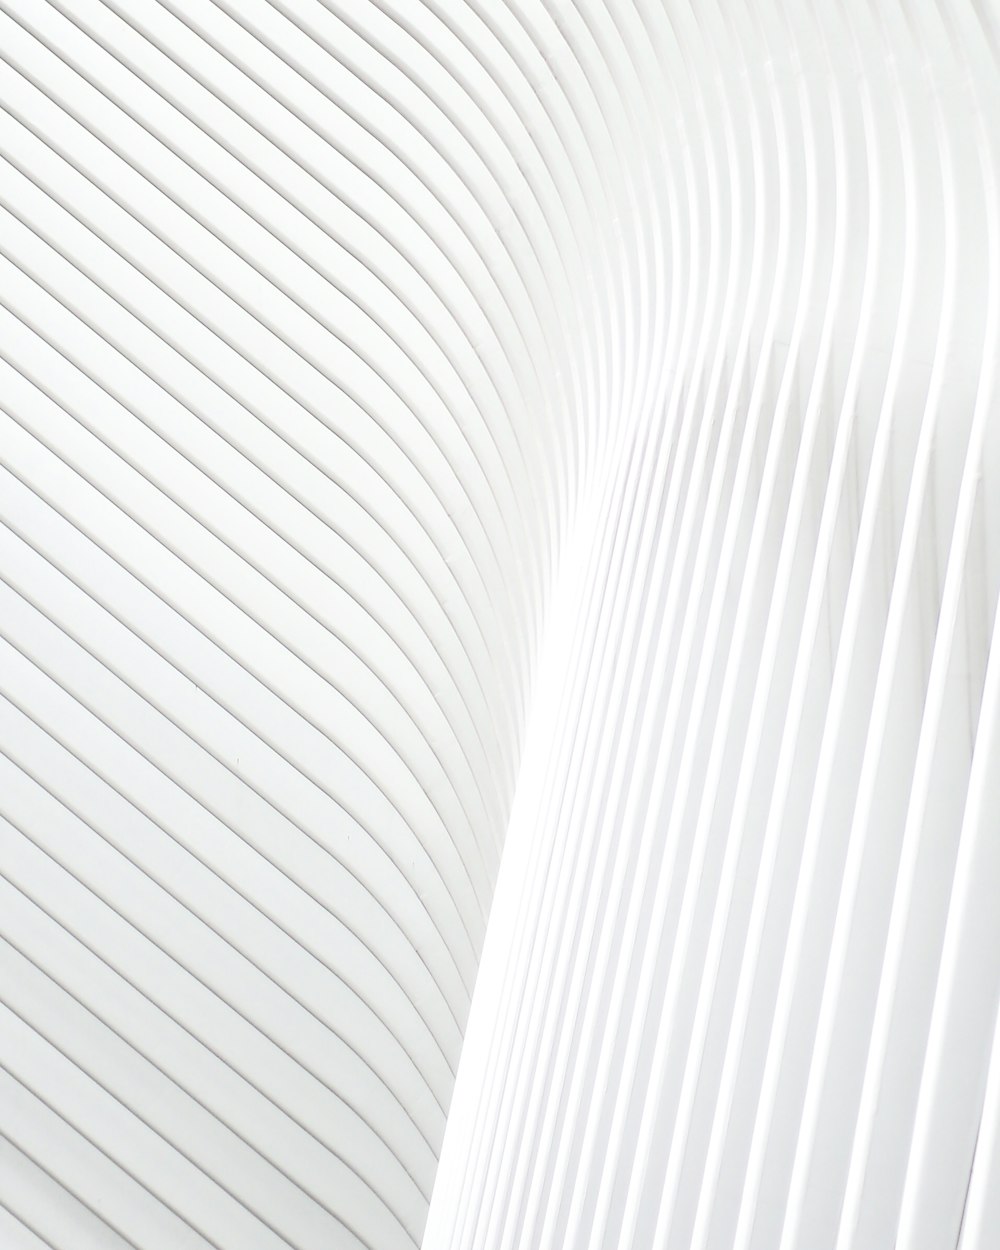 um close up de uma parede branca com linhas onduladas